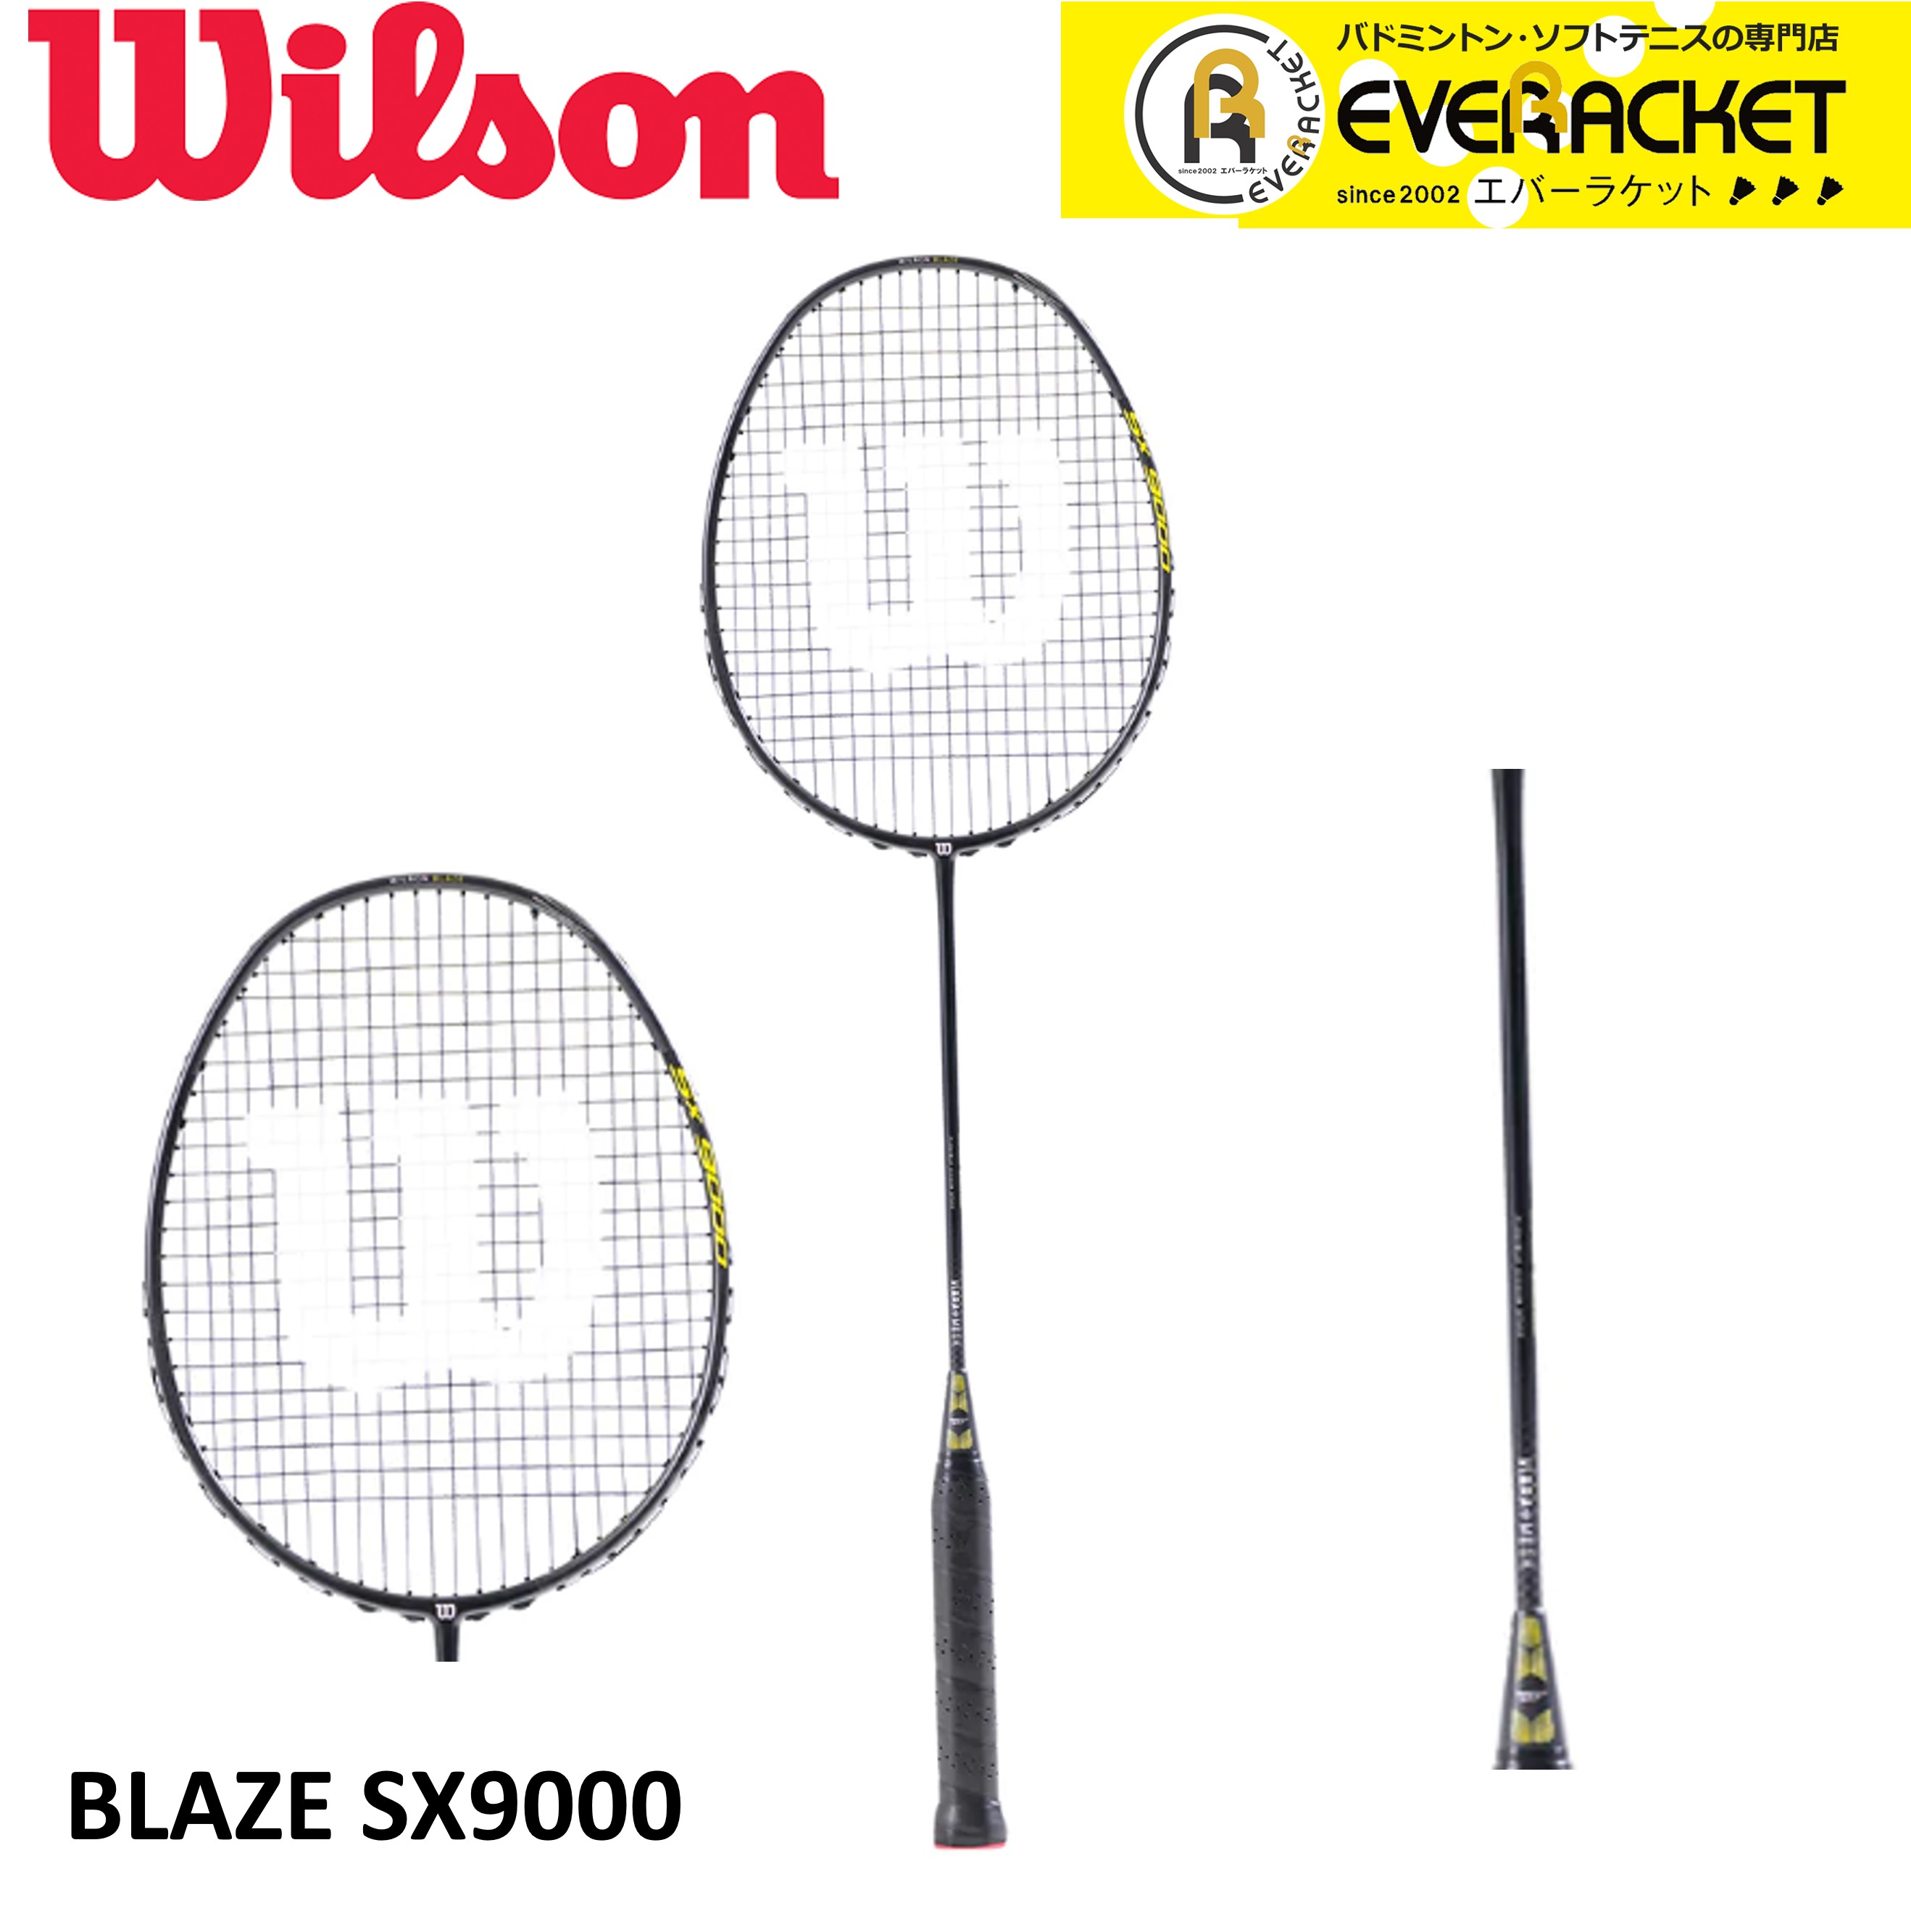 ウィルソン BLAZE SX9000 V2.0 (バドミントンラケット) 価格比較